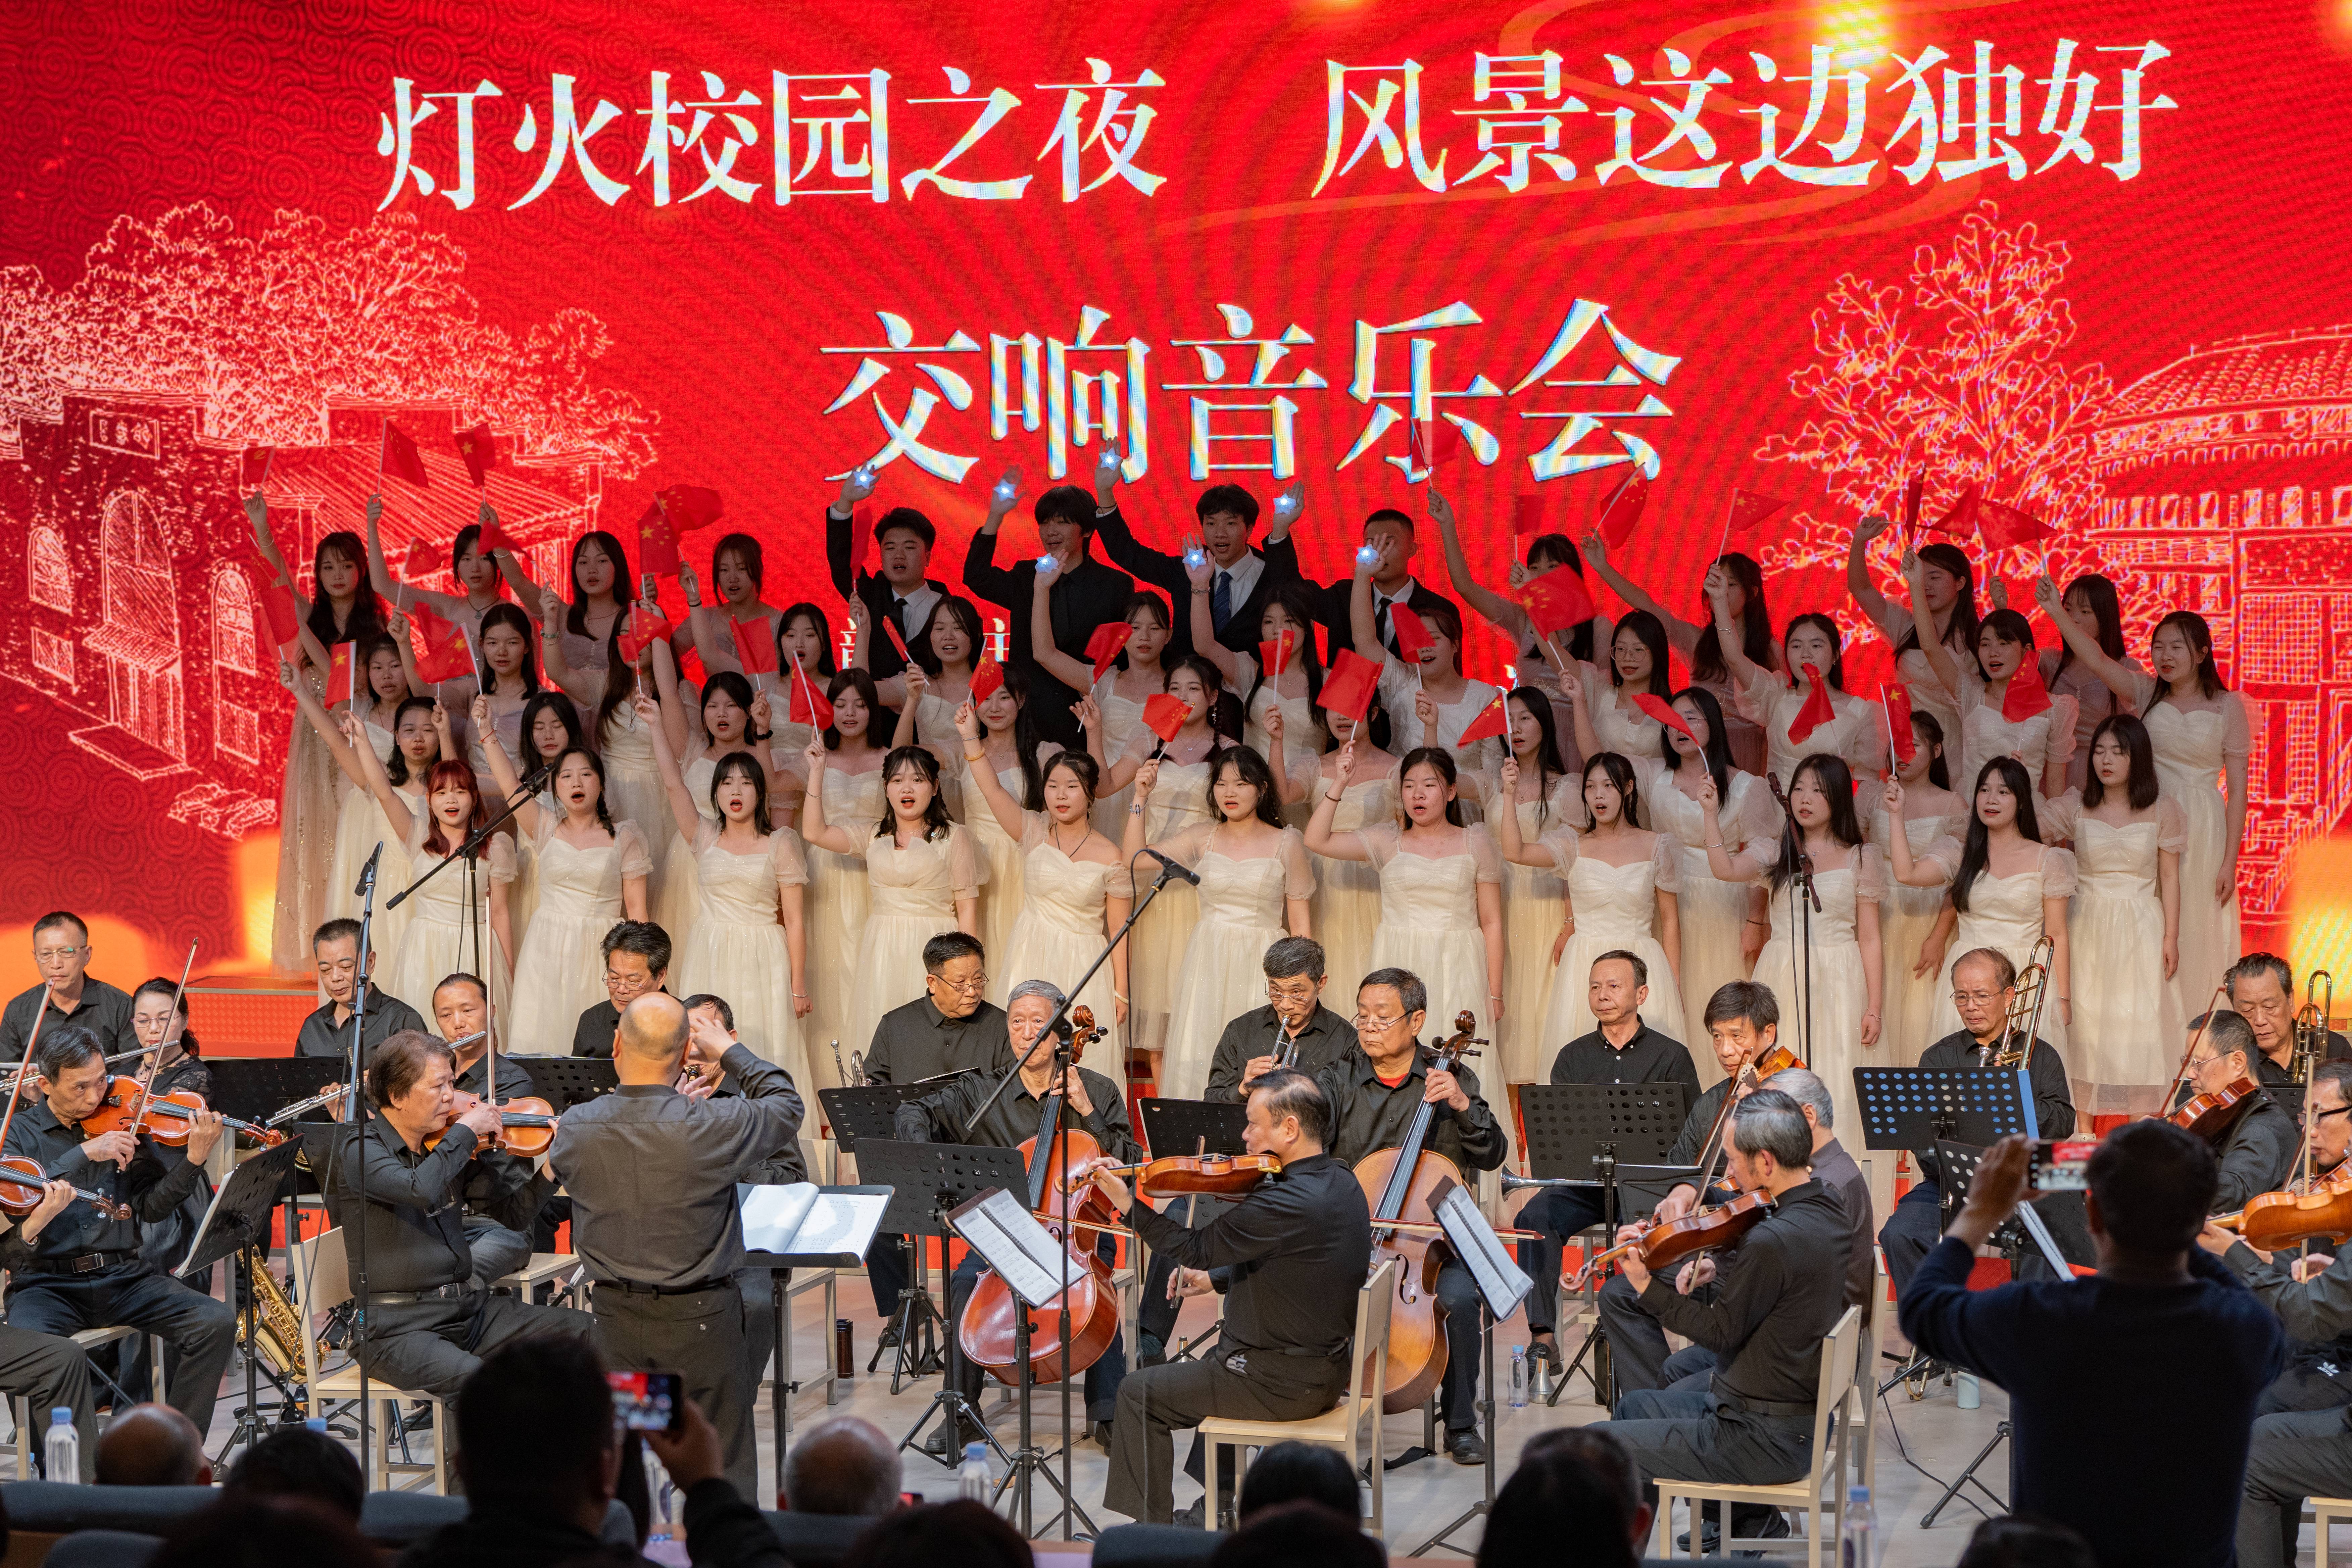 赣州老年大学与和君职业学院联合举办交响音乐会